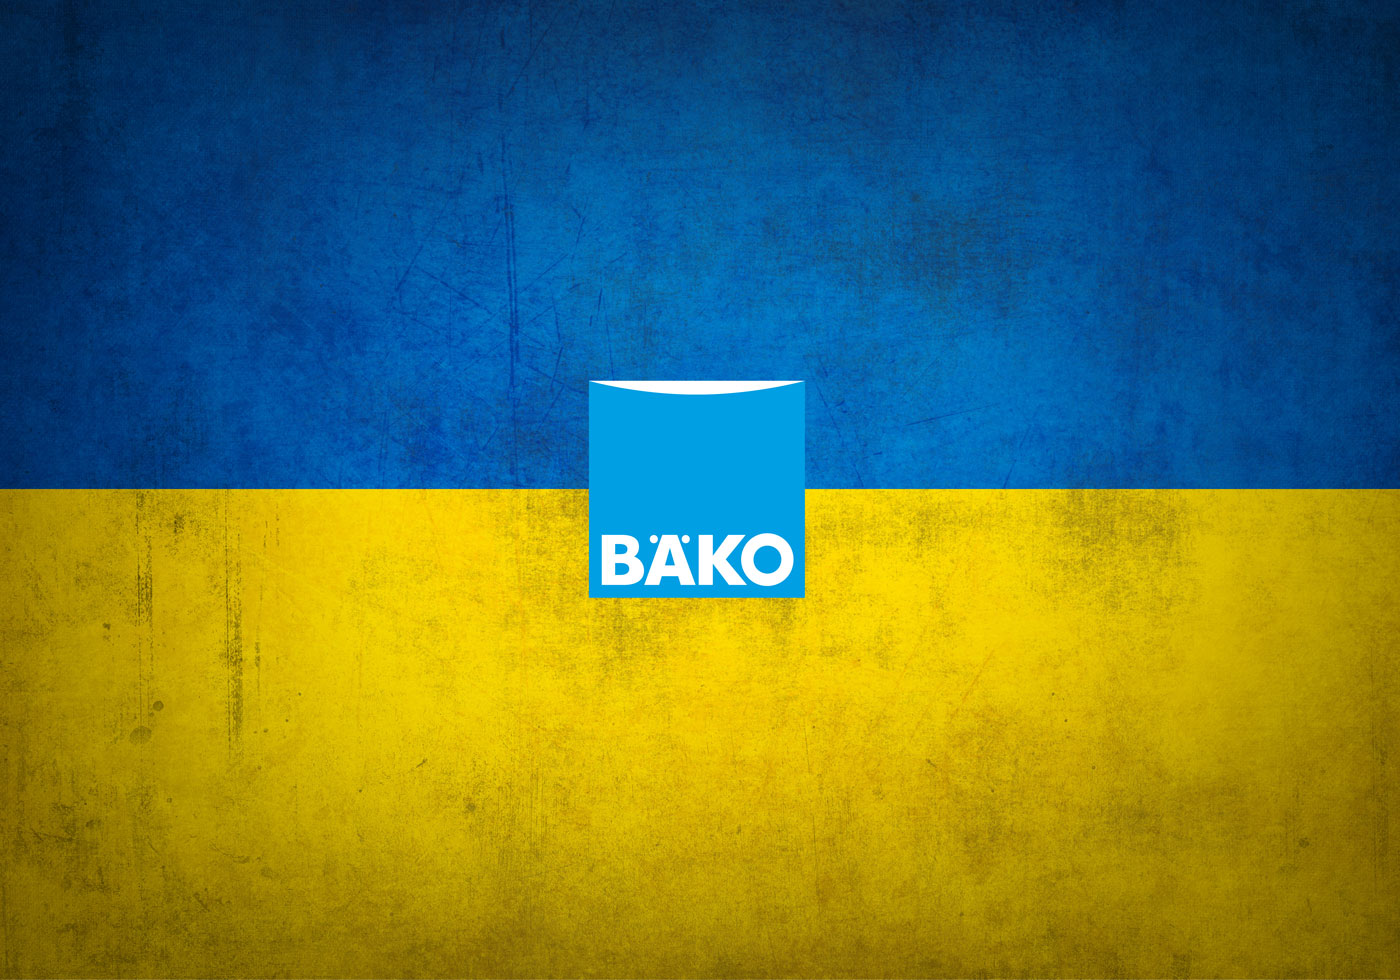 Bäko spendet 300.000 für Ukraine